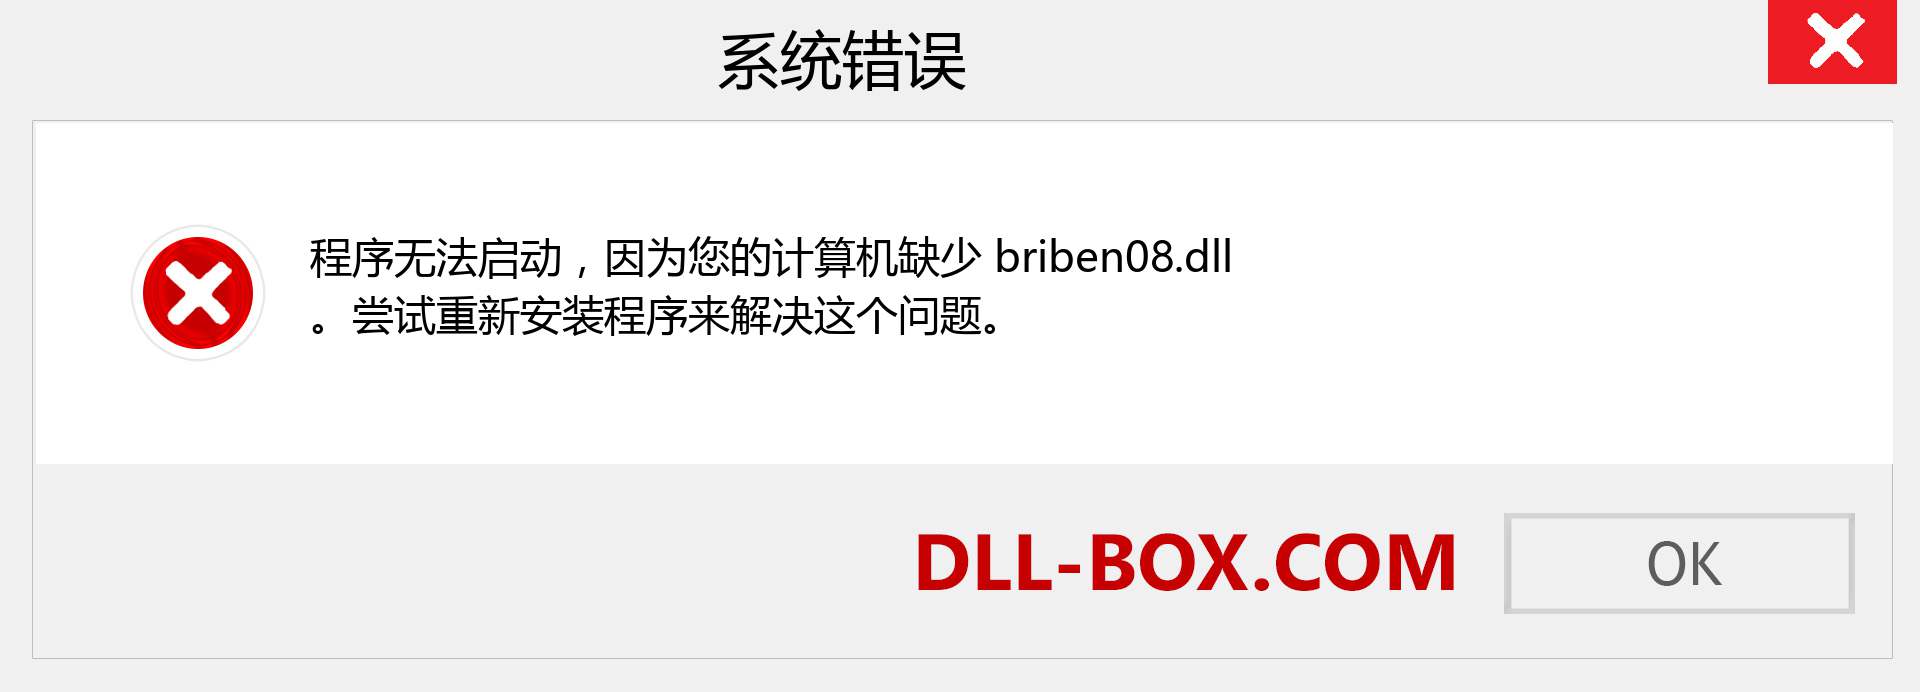 briben08.dll 文件丢失？。 适用于 Windows 7、8、10 的下载 - 修复 Windows、照片、图像上的 briben08 dll 丢失错误